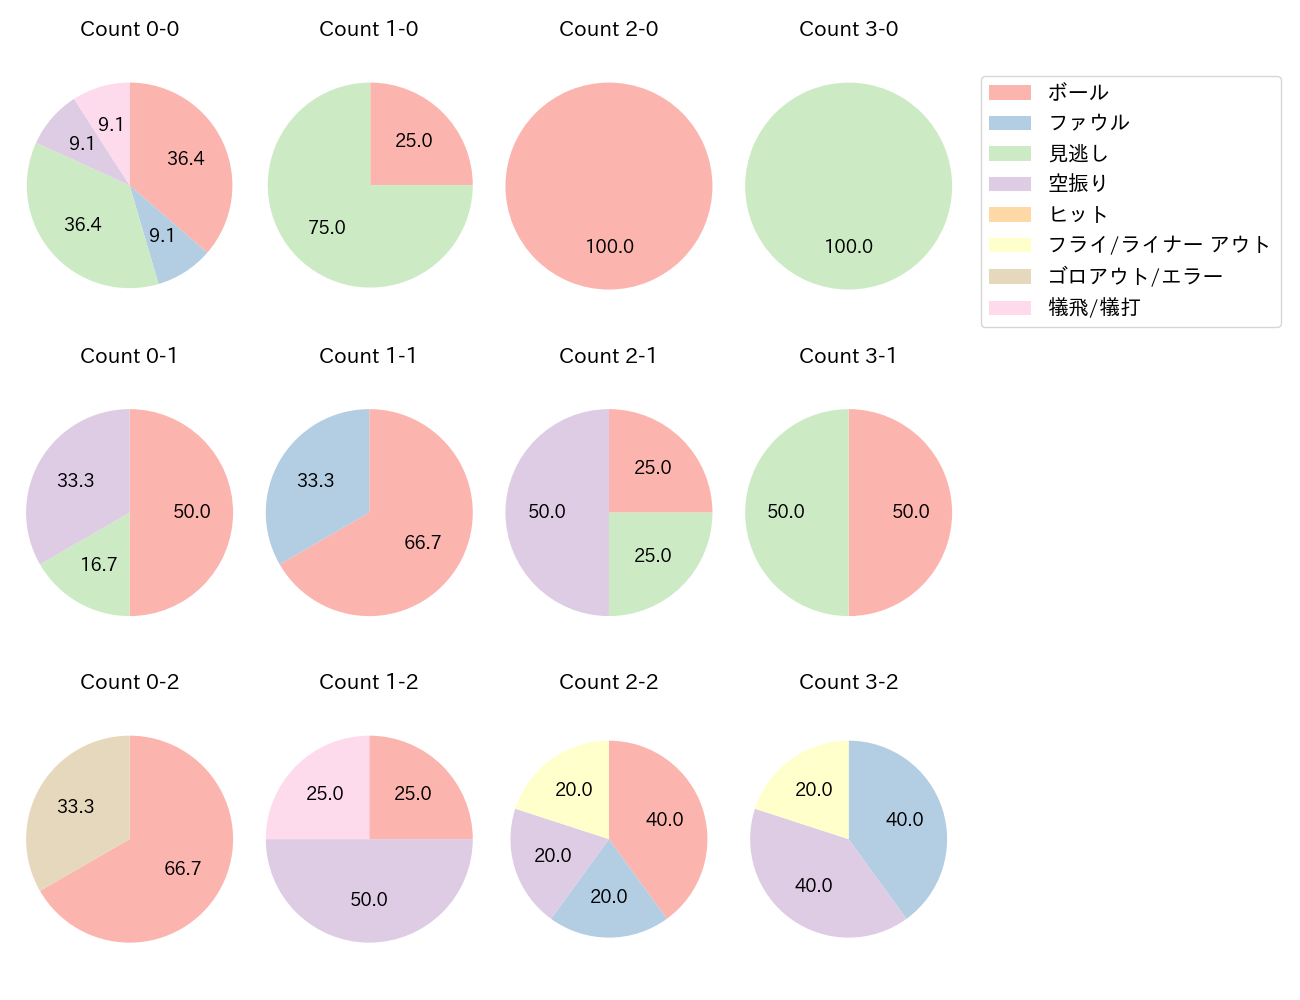 伊藤 将司の球数分布(2022年8月)